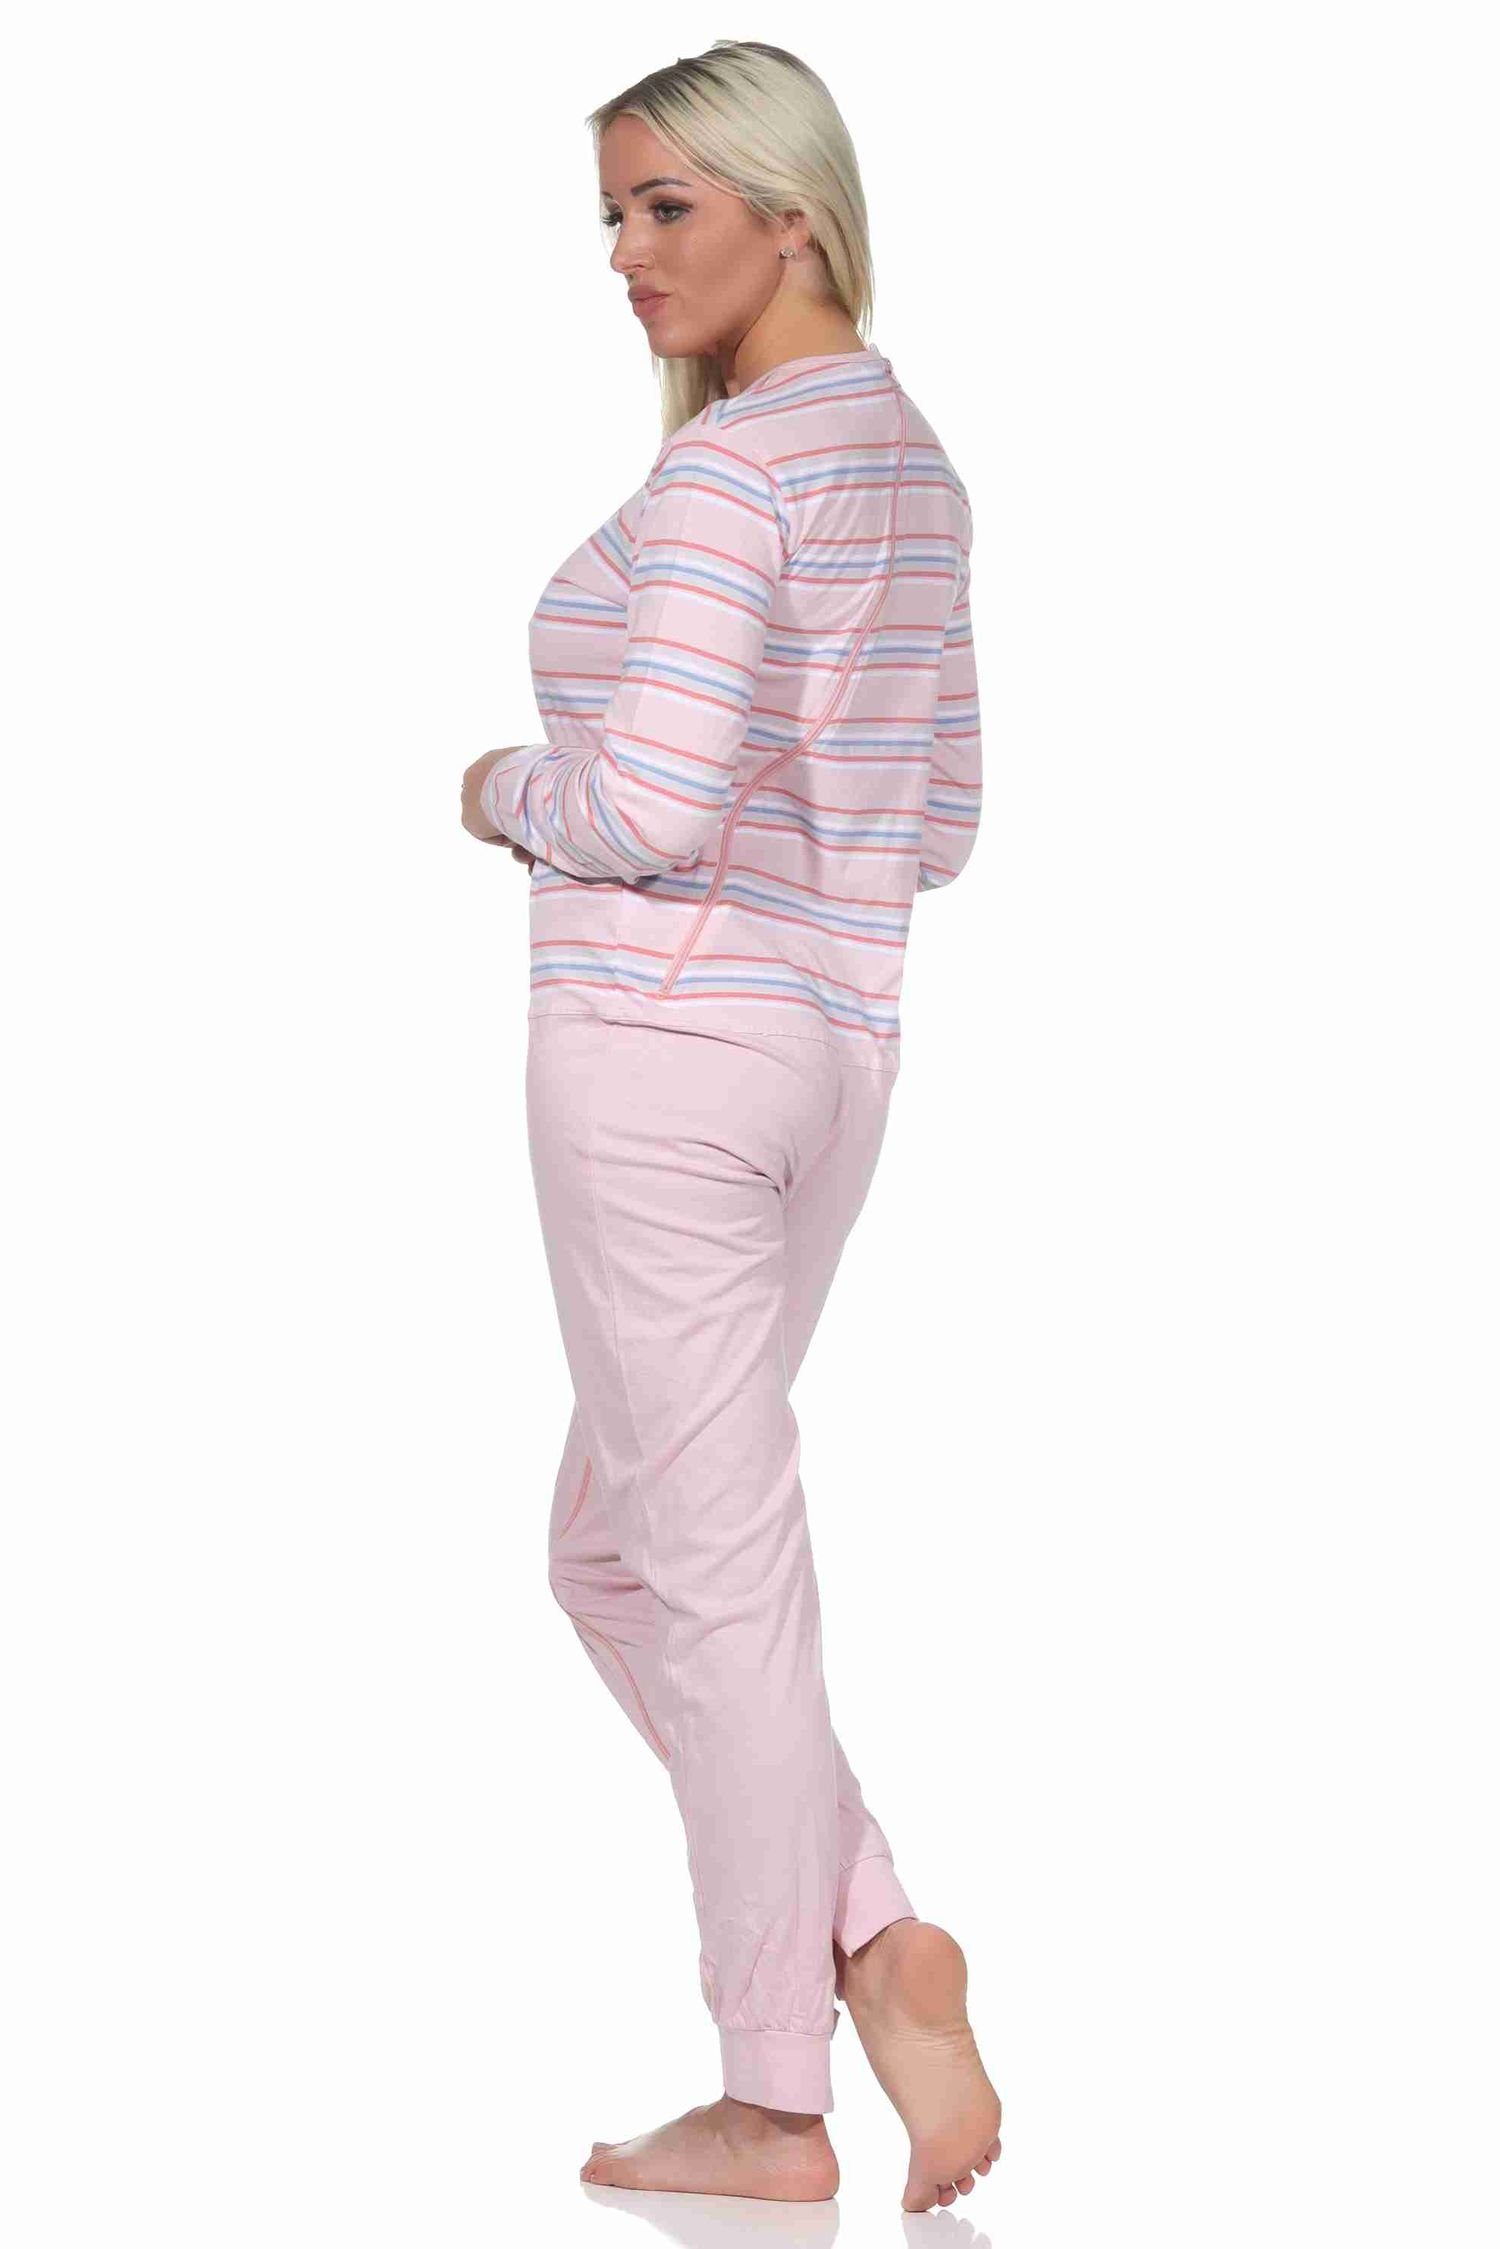 Pyjama Care Bein Damen Normann am Pflegeoverall mit und Rücken Reissverschluss langarm